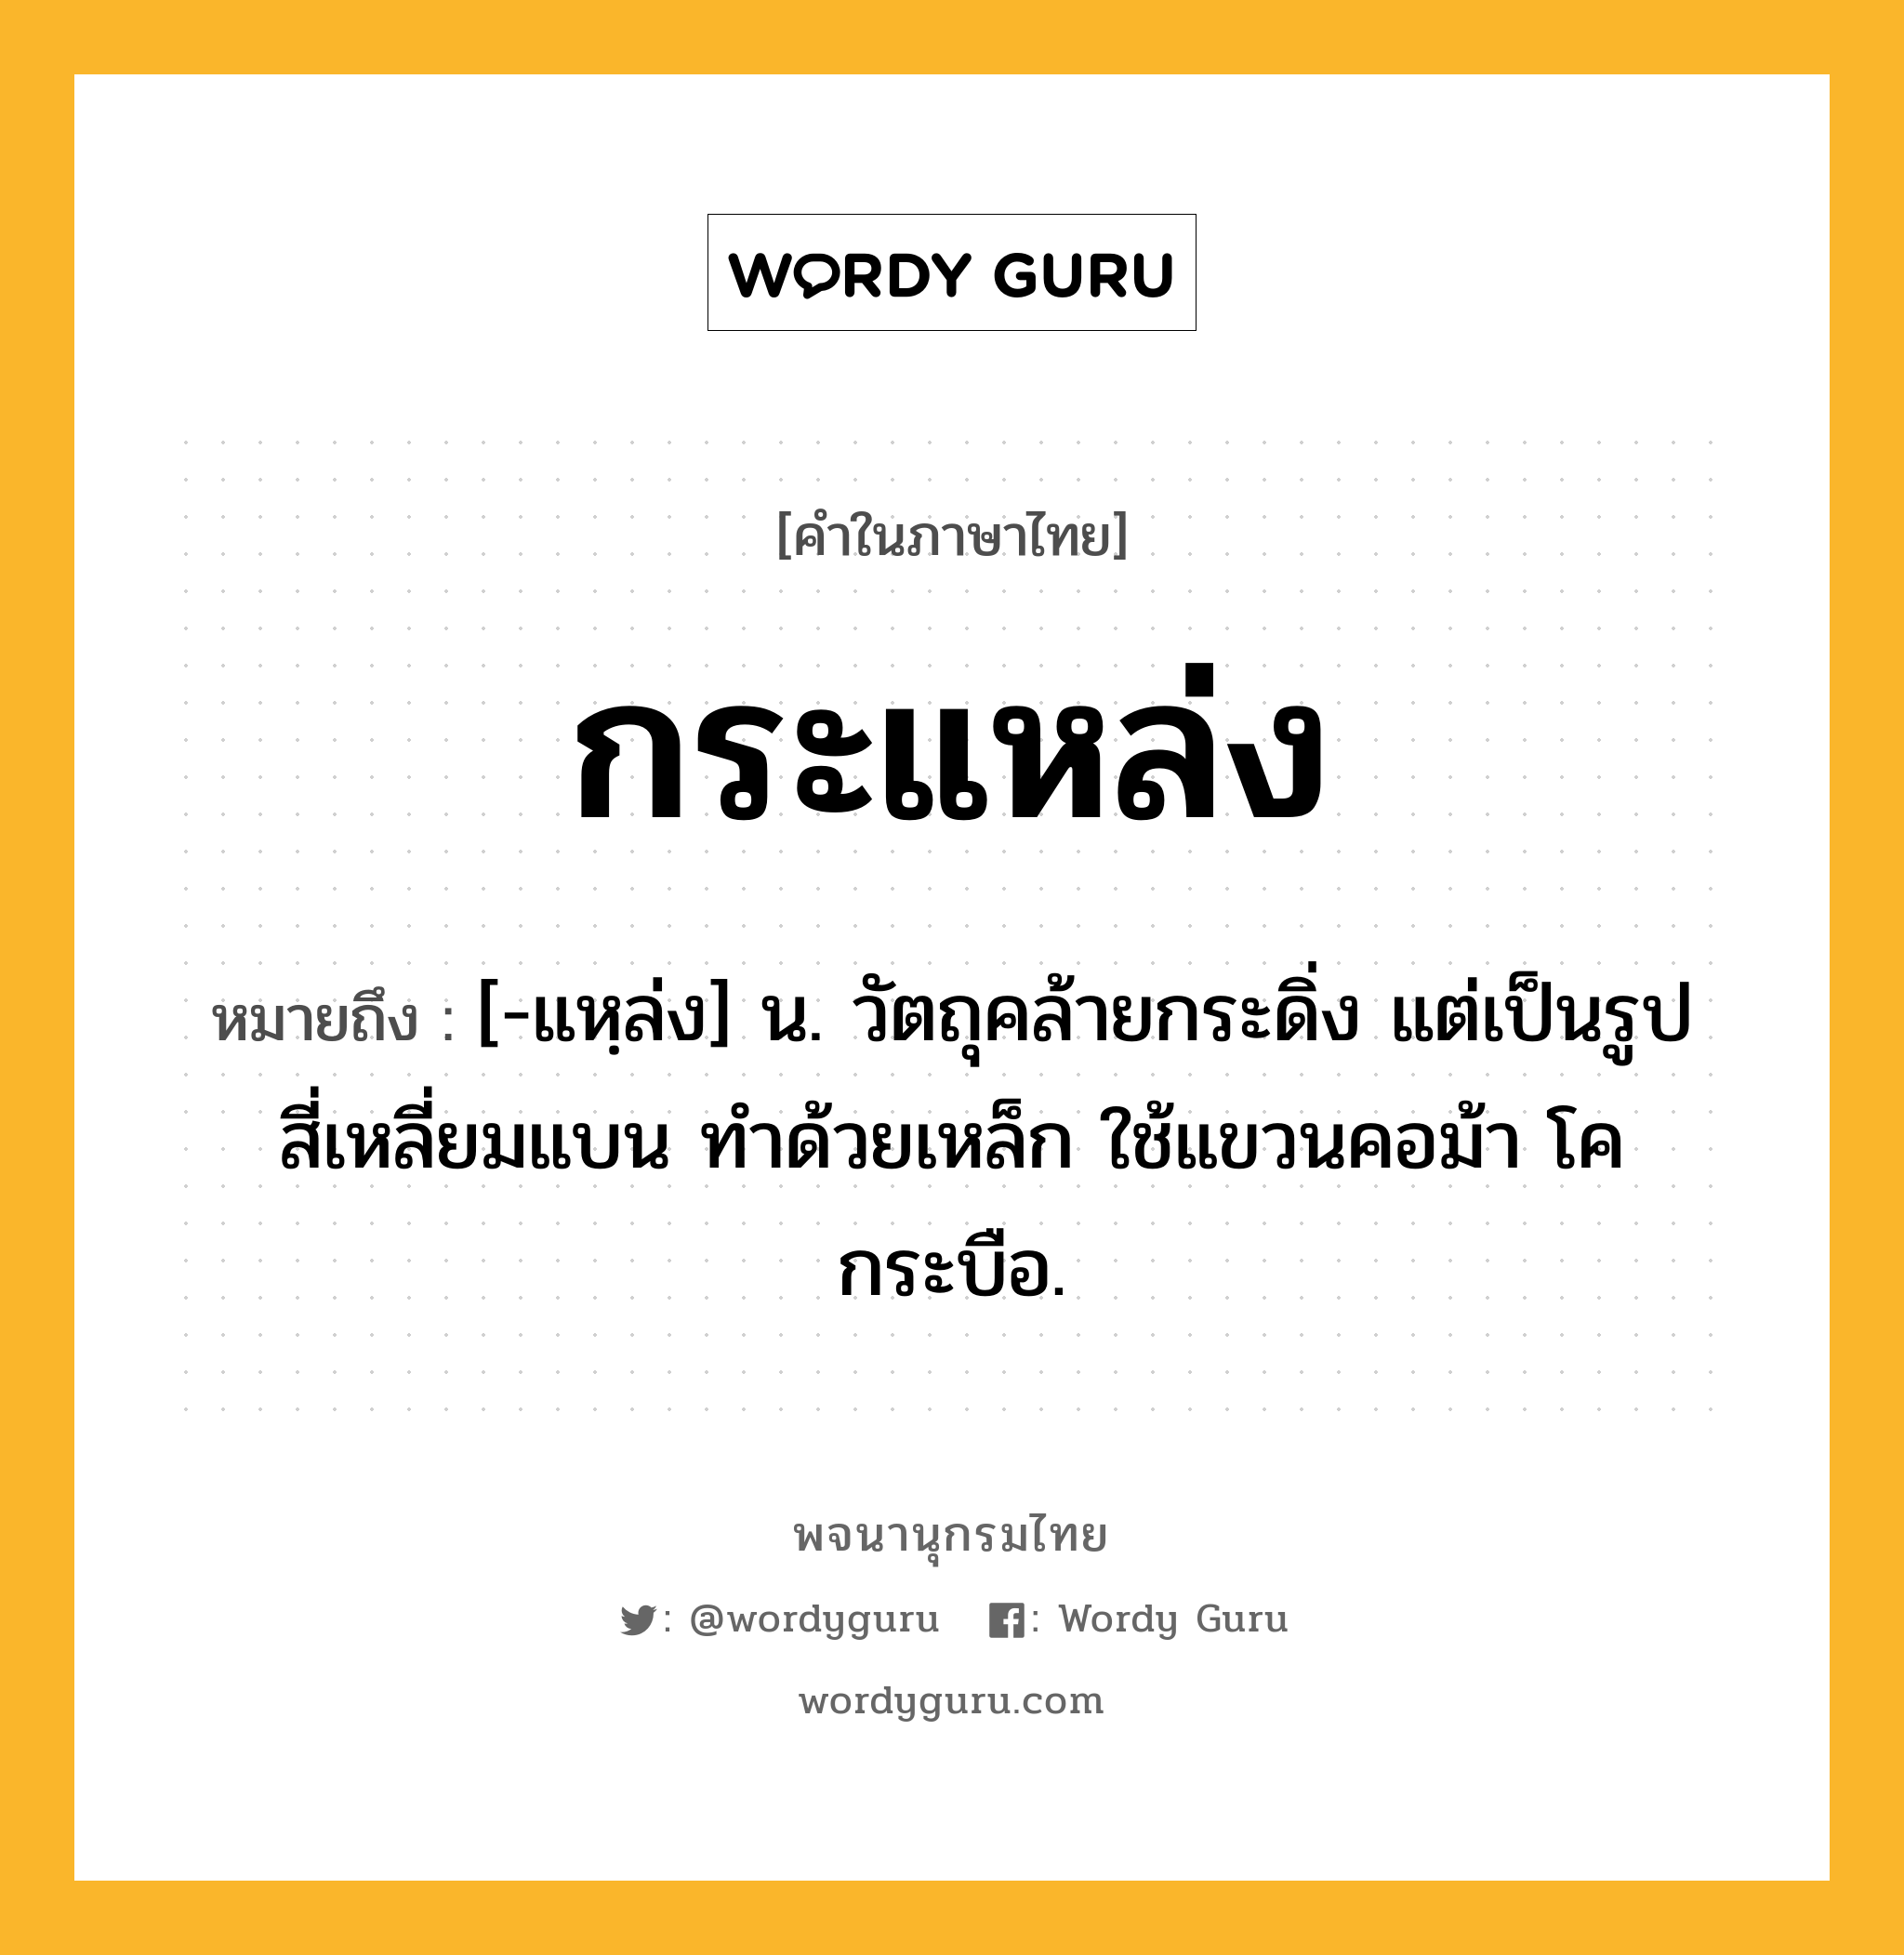 กระแหล่ง หมายถึงอะไร?, คำในภาษาไทย กระแหล่ง หมายถึง [-แหฺล่ง] น. วัตถุคล้ายกระดิ่ง แต่เป็นรูปสี่เหลี่ยมแบน ทําด้วยเหล็ก ใช้แขวนคอม้า โค กระบือ.